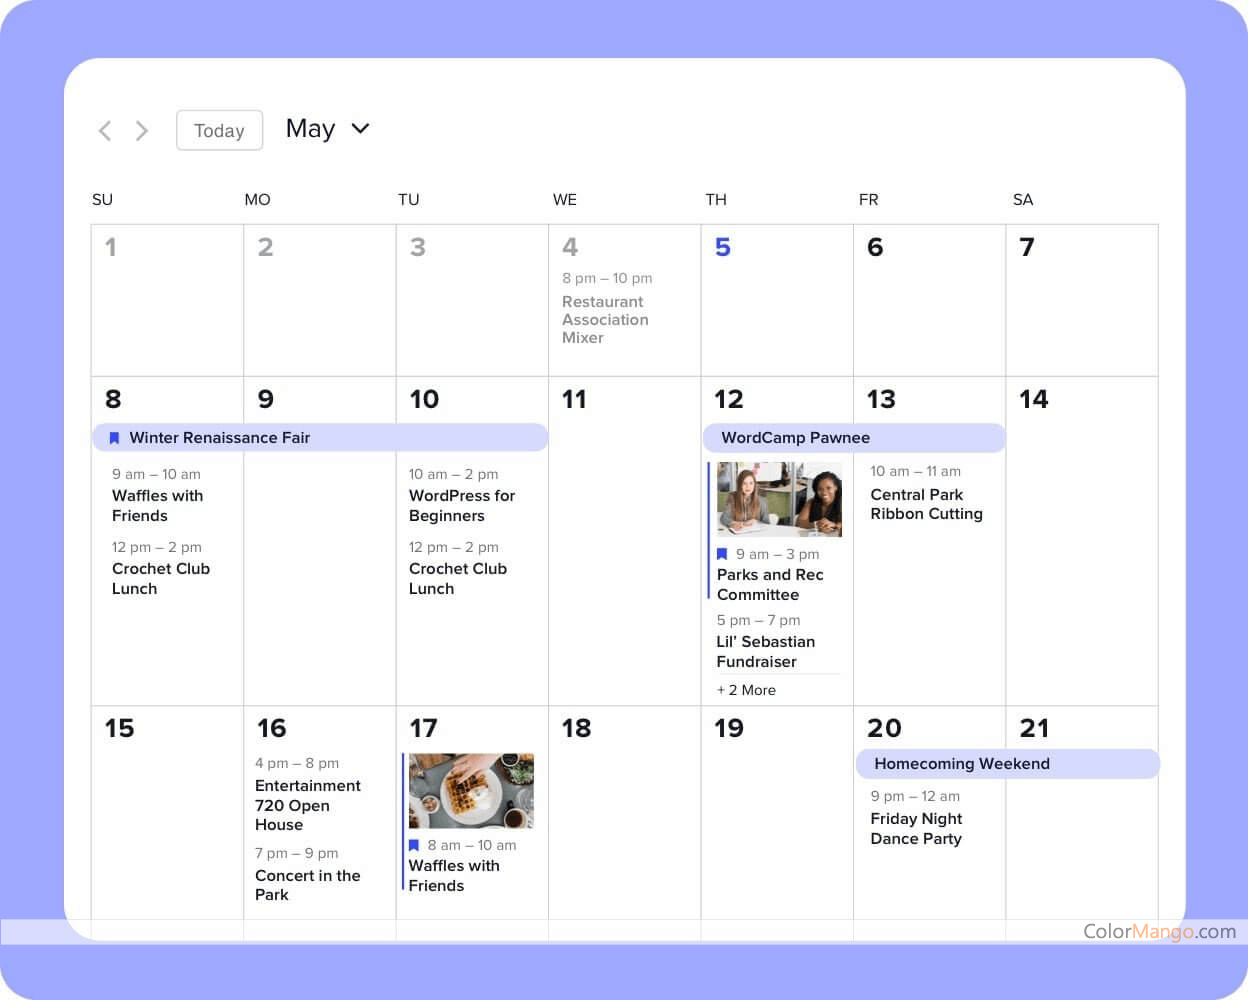 The Events Calendar Screenshot